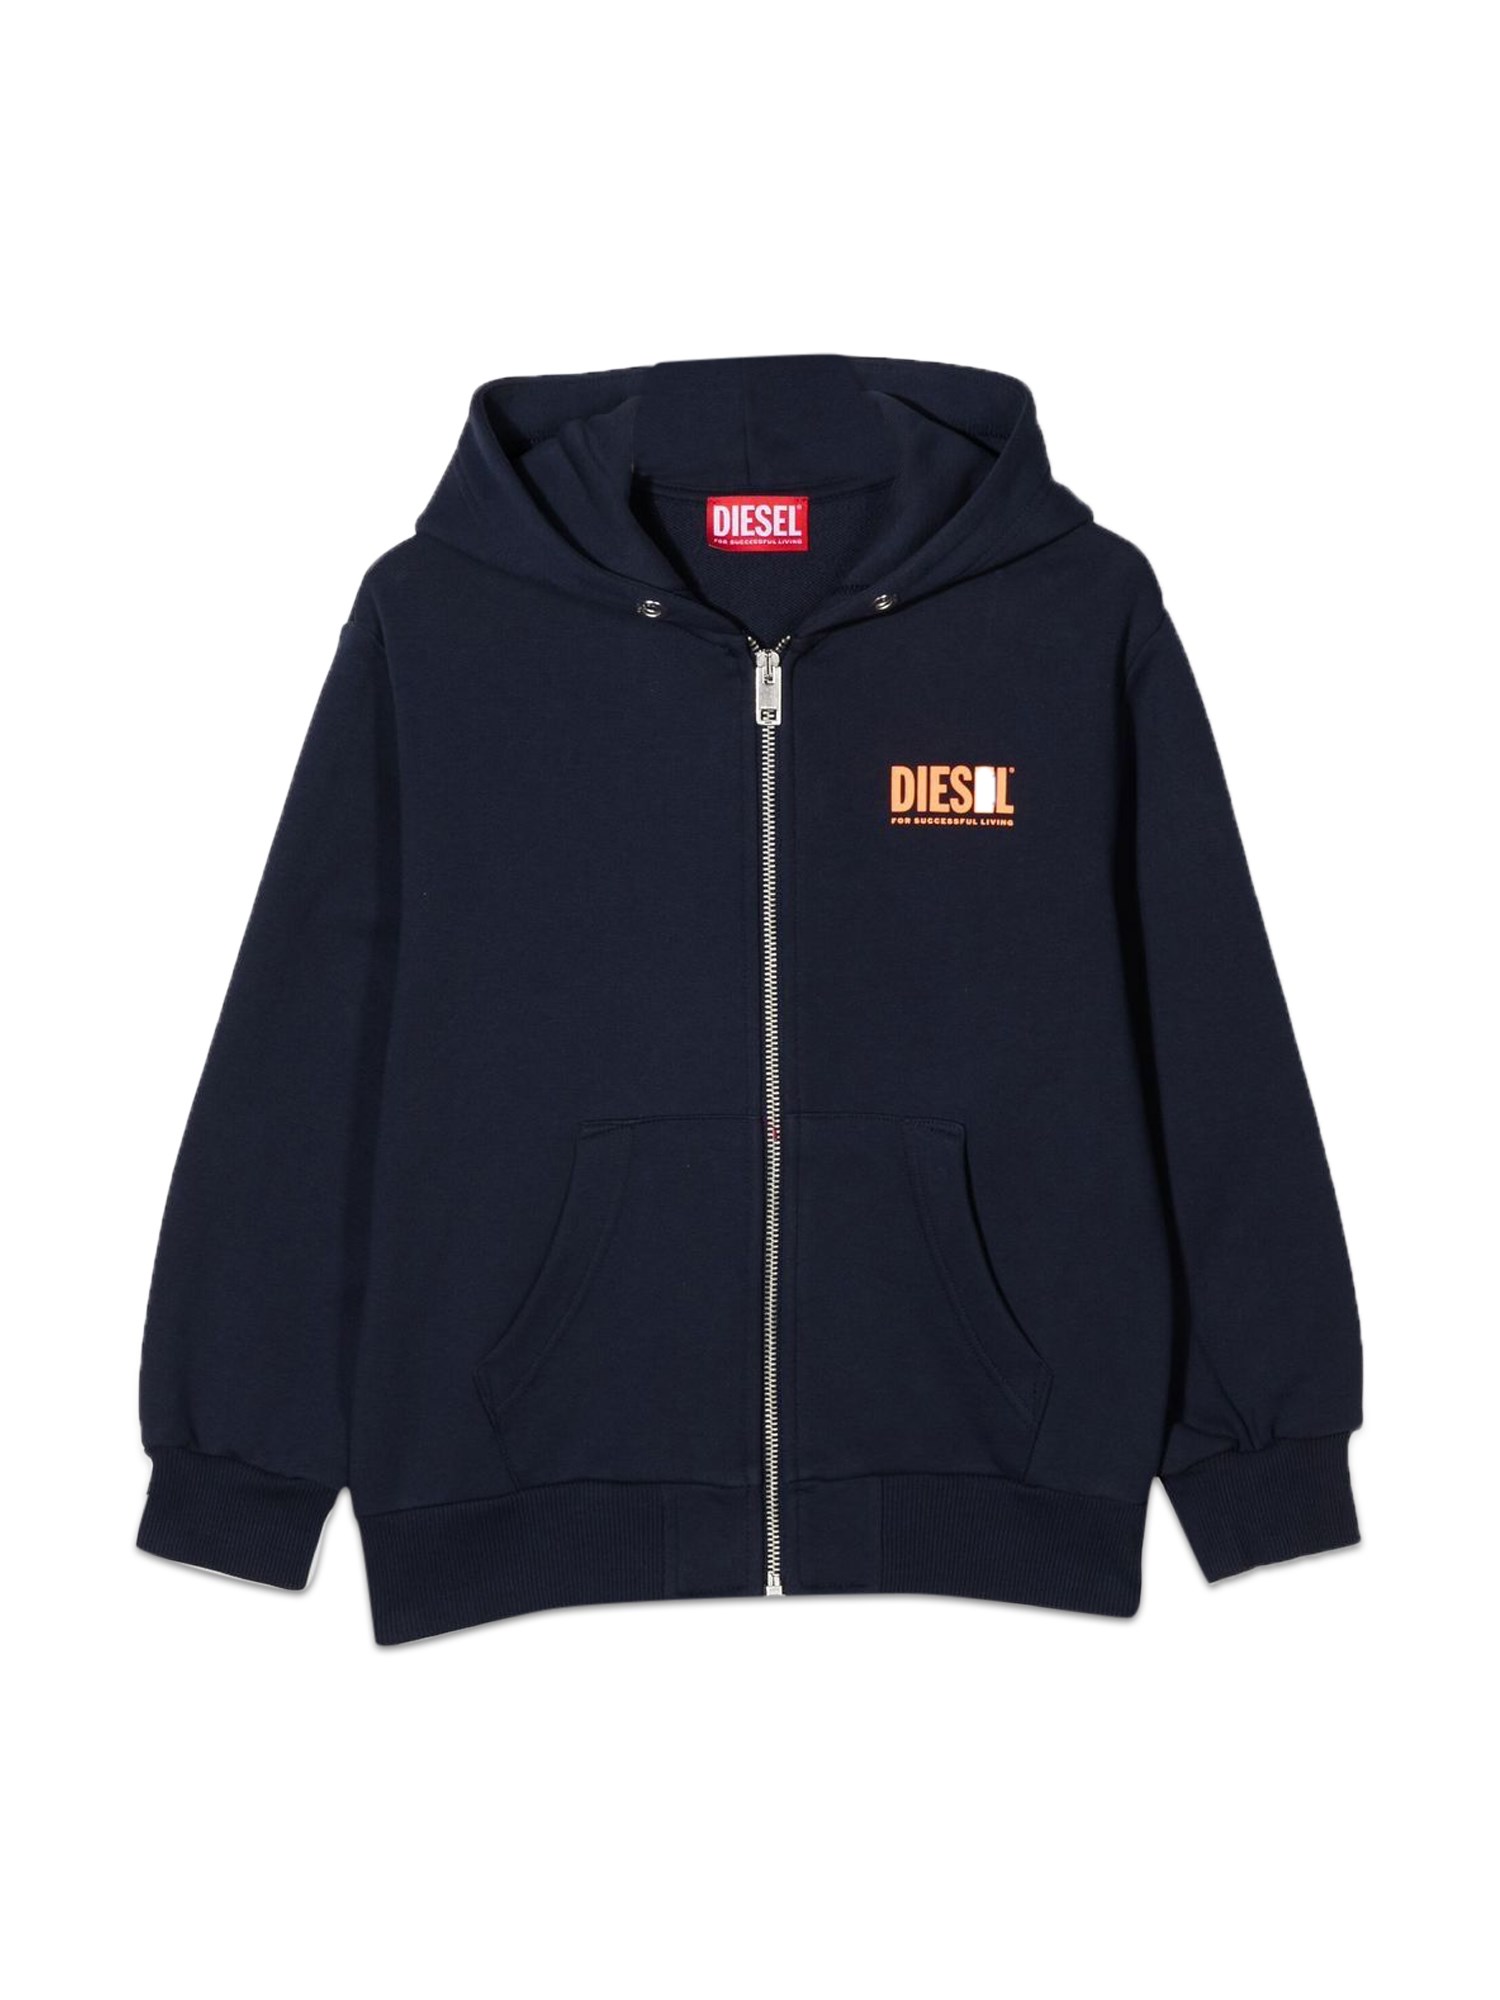 diesel kids sweatshirt with logo hood and zipper